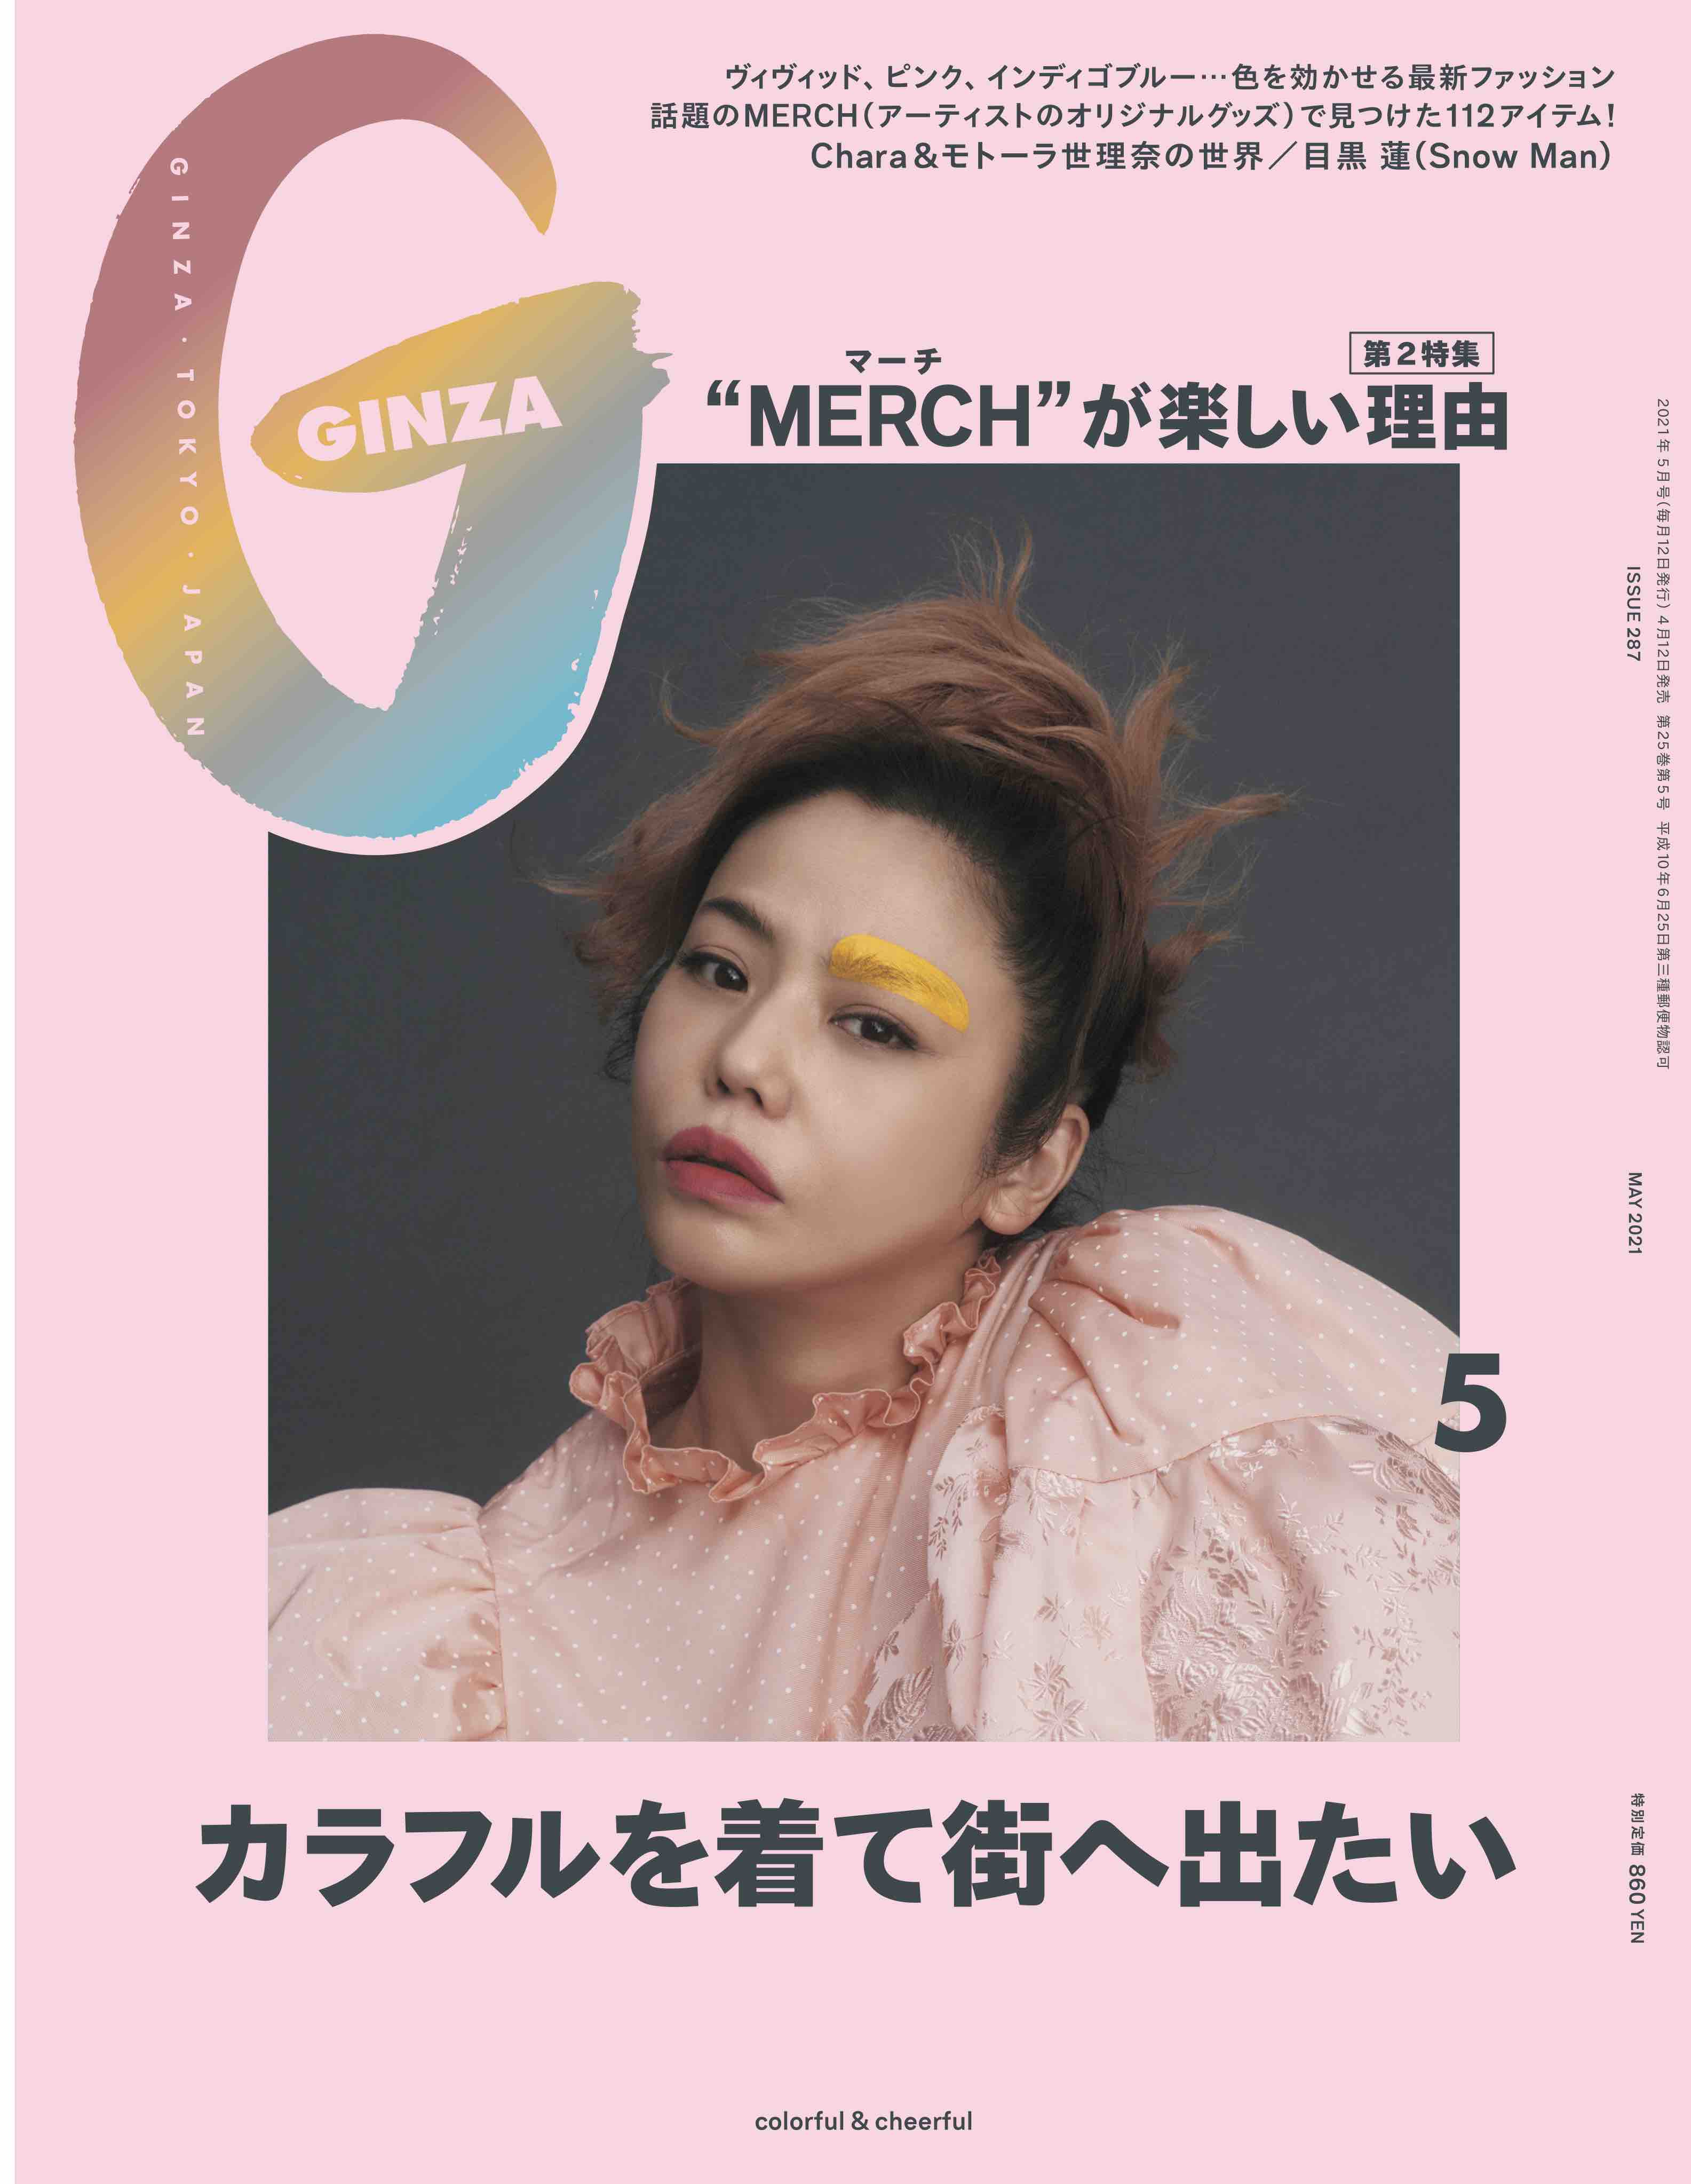 目黒蓮 Snow Man 単独ファッションシューティングで Ginza 5月号に登場 Daily News Billboard Japan